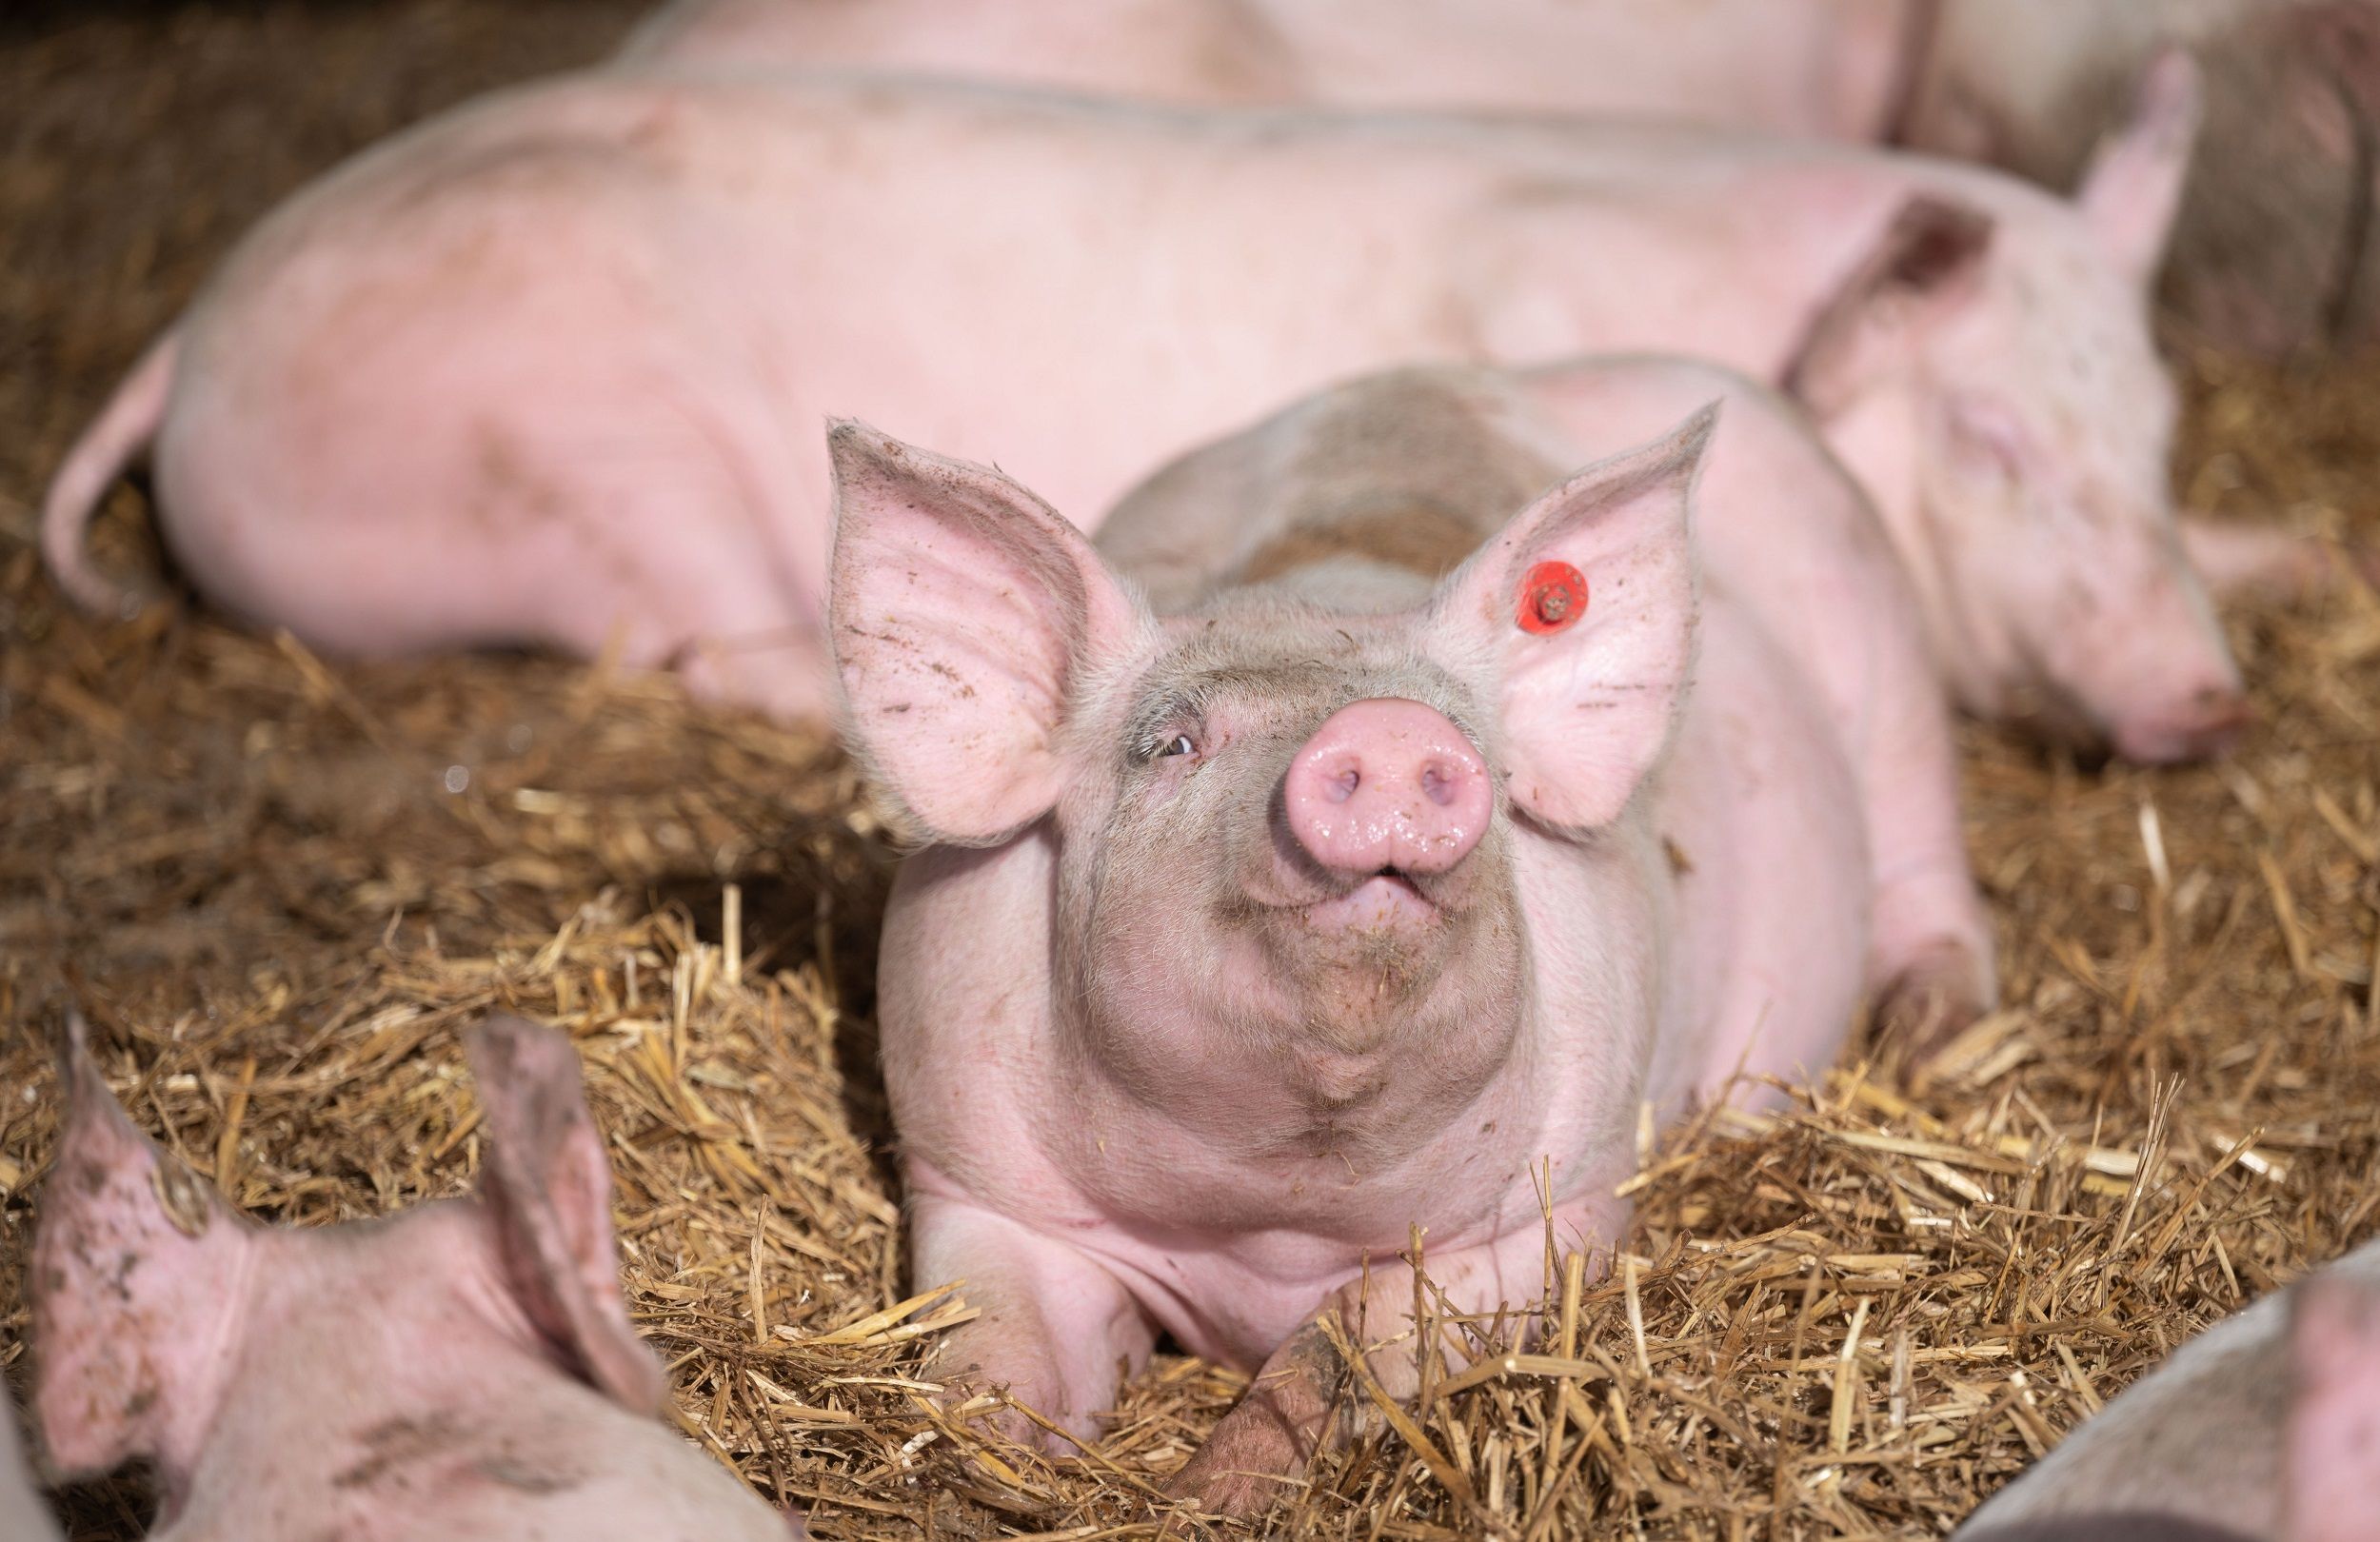 Mehr Platz und reichlich Stroh: In Tierwohlställen sollen Schweine ein besseres Leben haben. Das sieht der Systemwechsel bei den Haltungsbedingungen vor – doch es gibt rechtliche Hürden und Unklarheiten zur Finanzierung. Foto: dpa/Murat